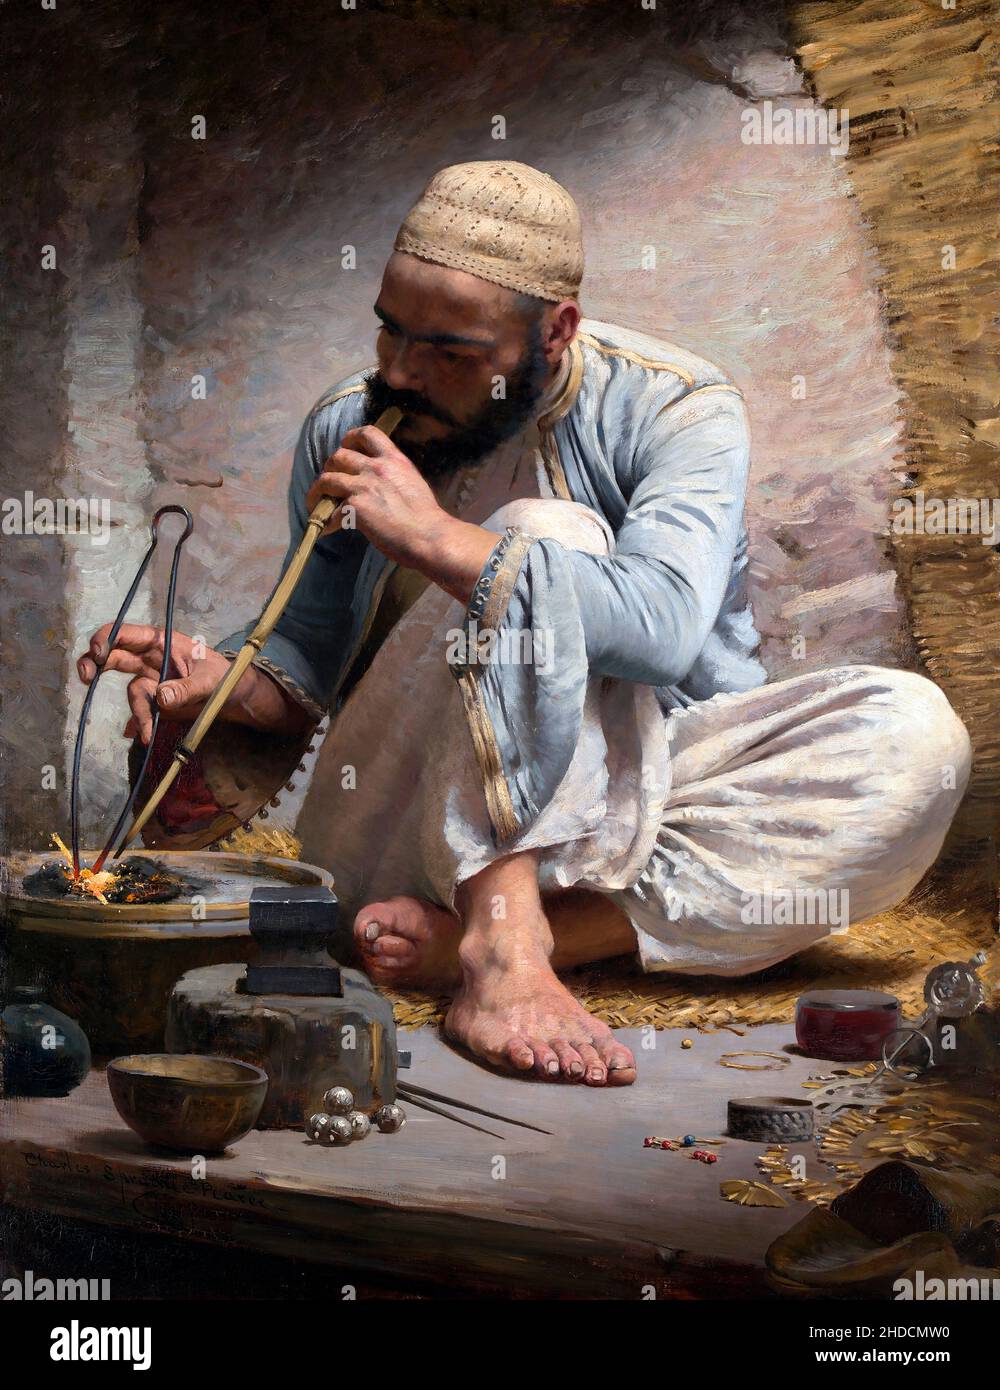 Le juif arabe de Charles Sprague Pearce (1851-1914), huile sur toile, c.1882 Banque D'Images